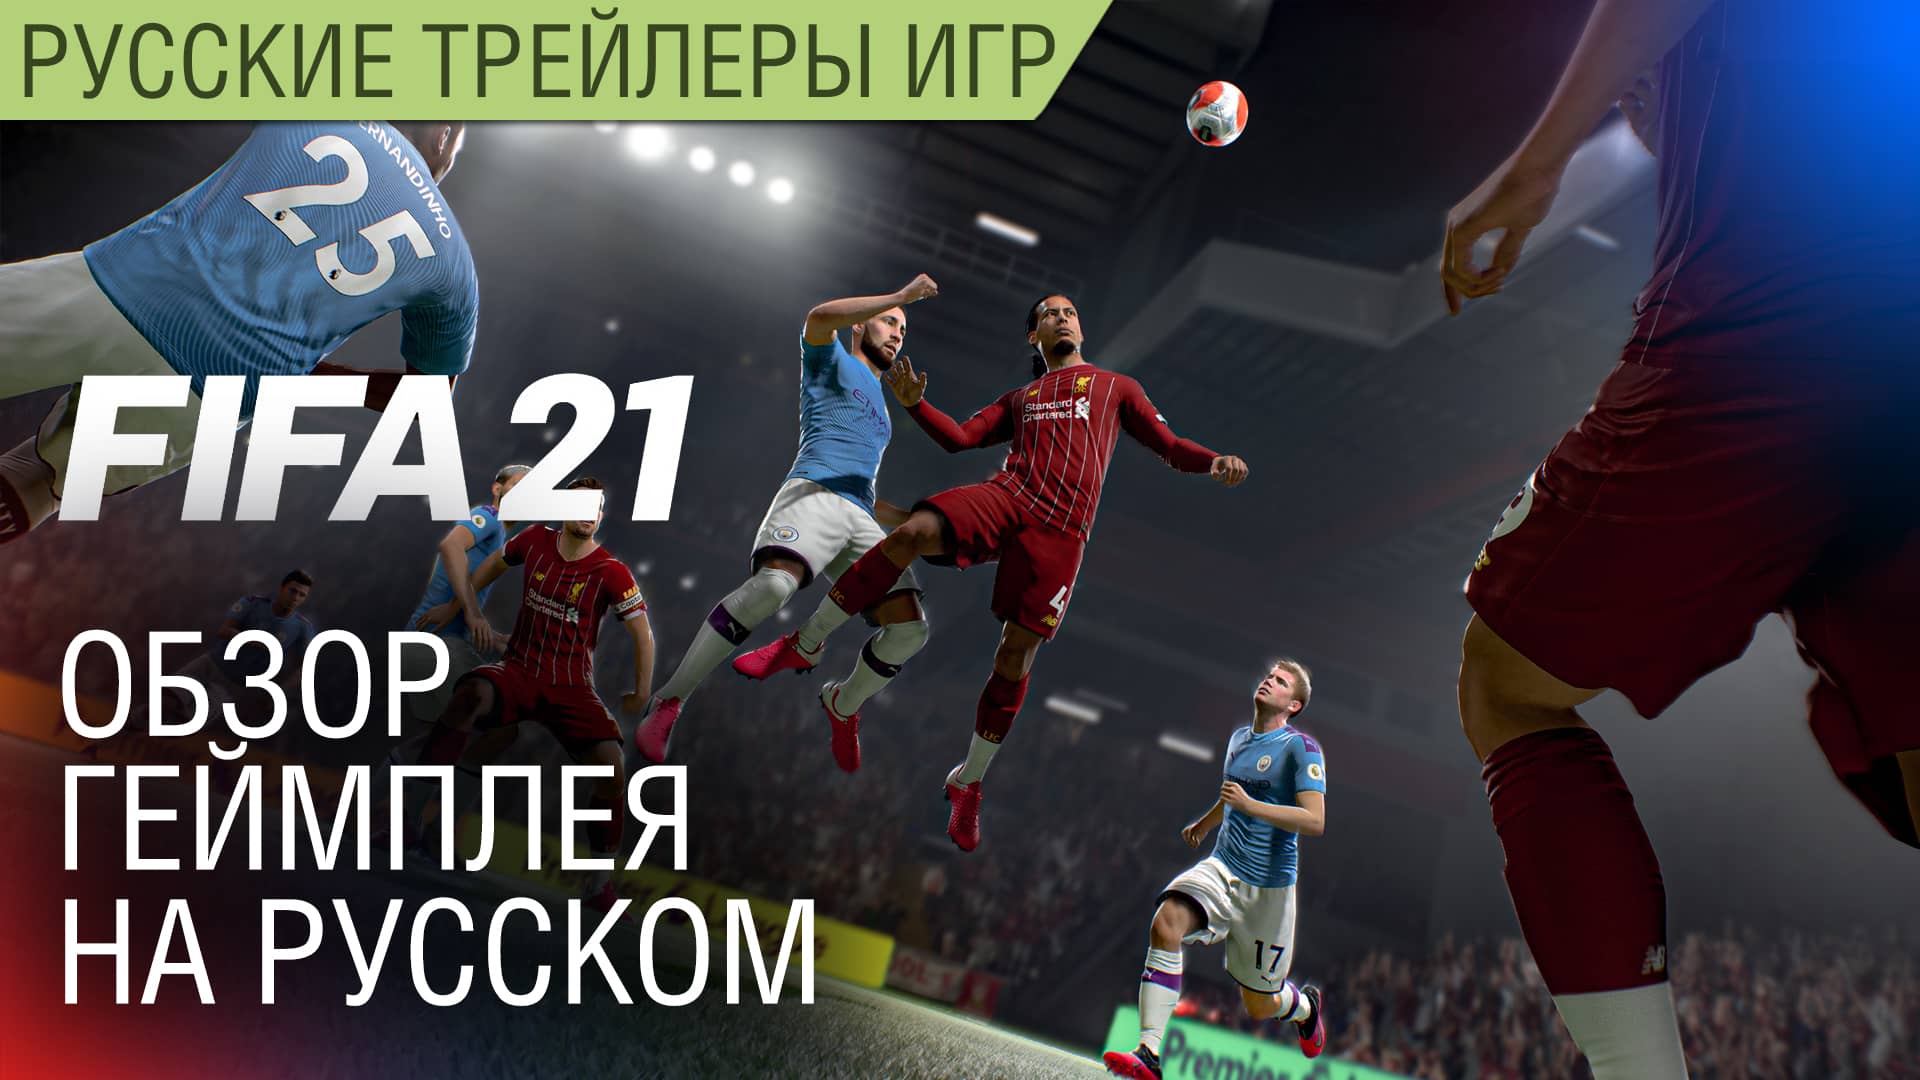 FIFA 21 - Обзор геймплея на русском